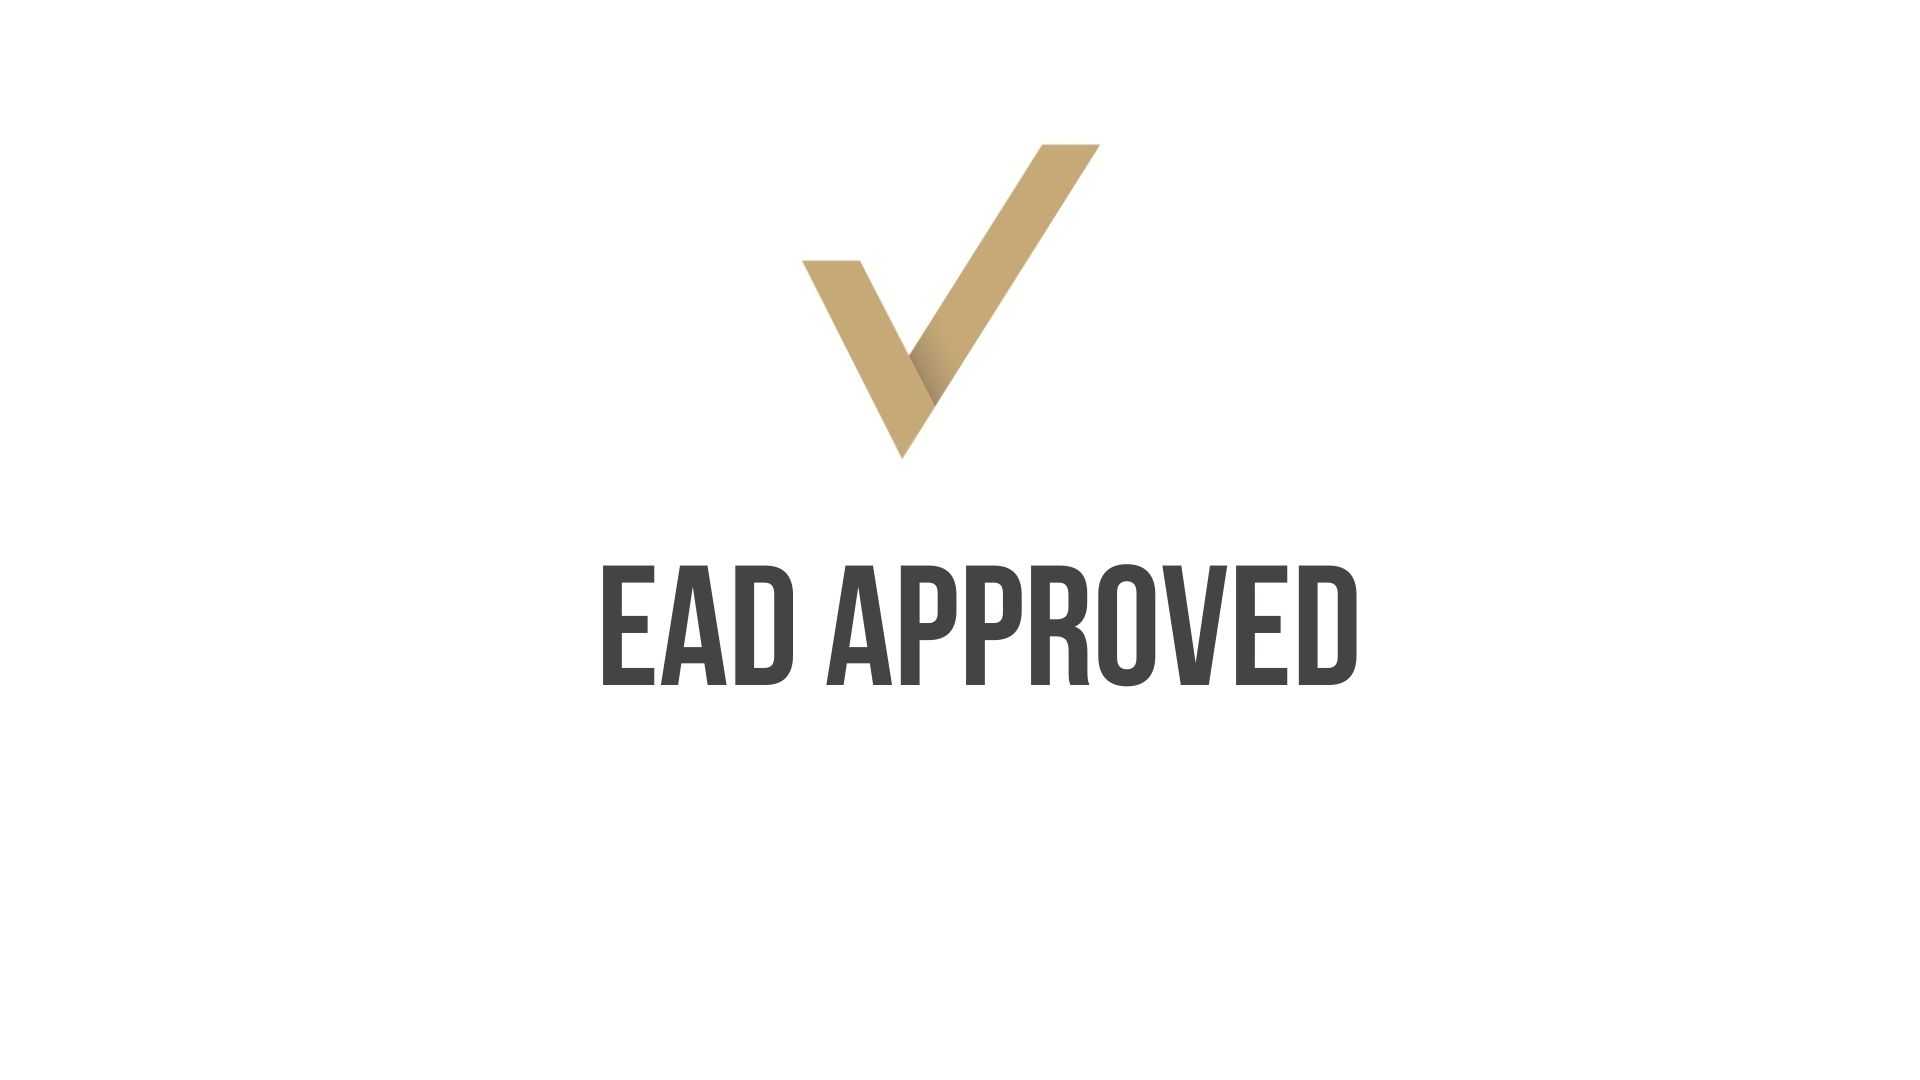 EAD Approval